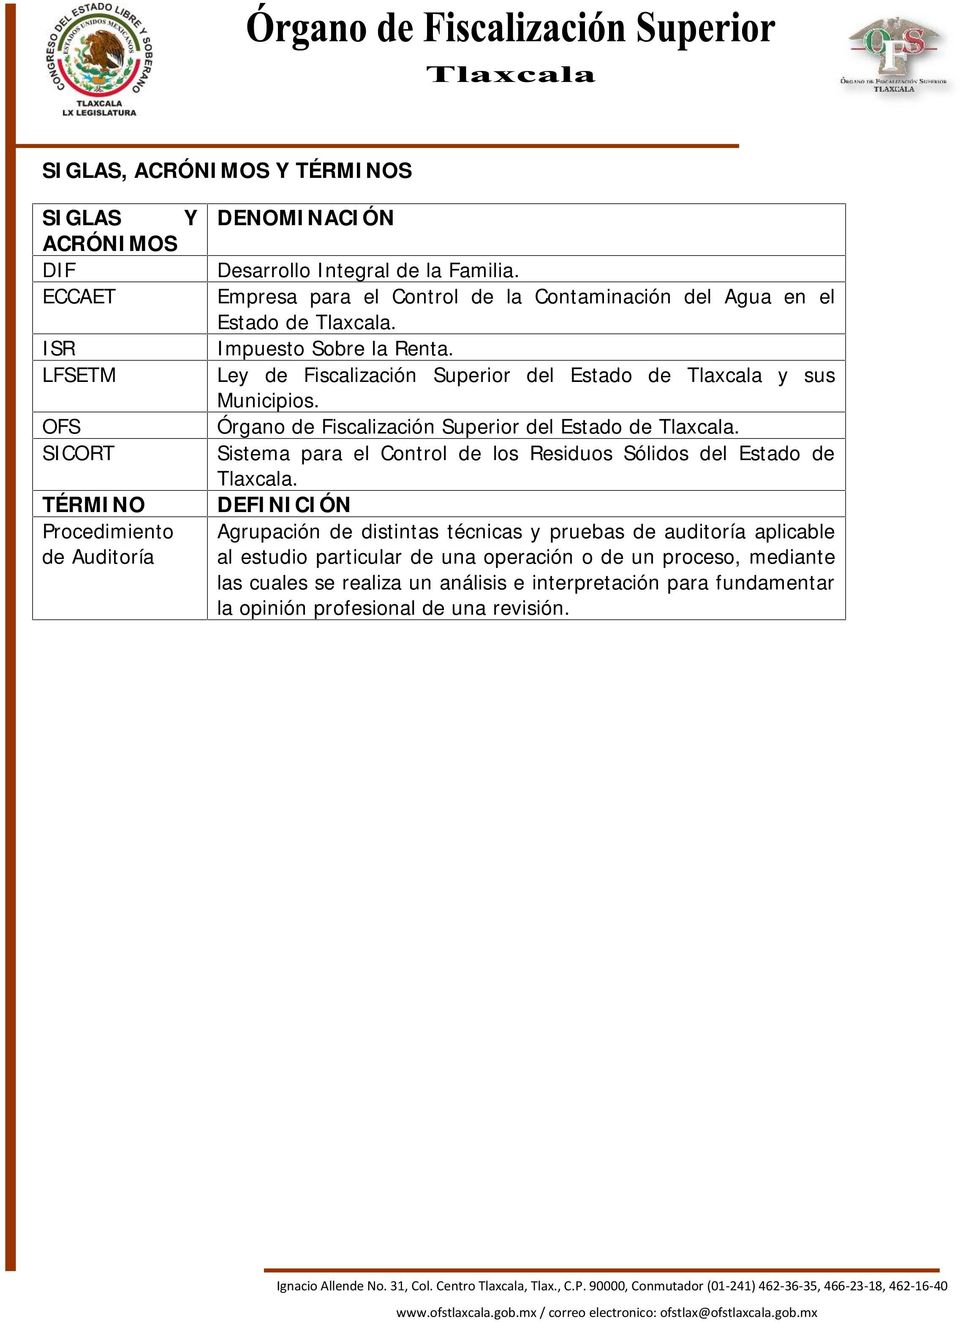 Órgano de Fiscalización Superior del Estado de Tlaxcala. Sistema para el Control de los Residuos Sólidos del Estado de Tlaxcala.